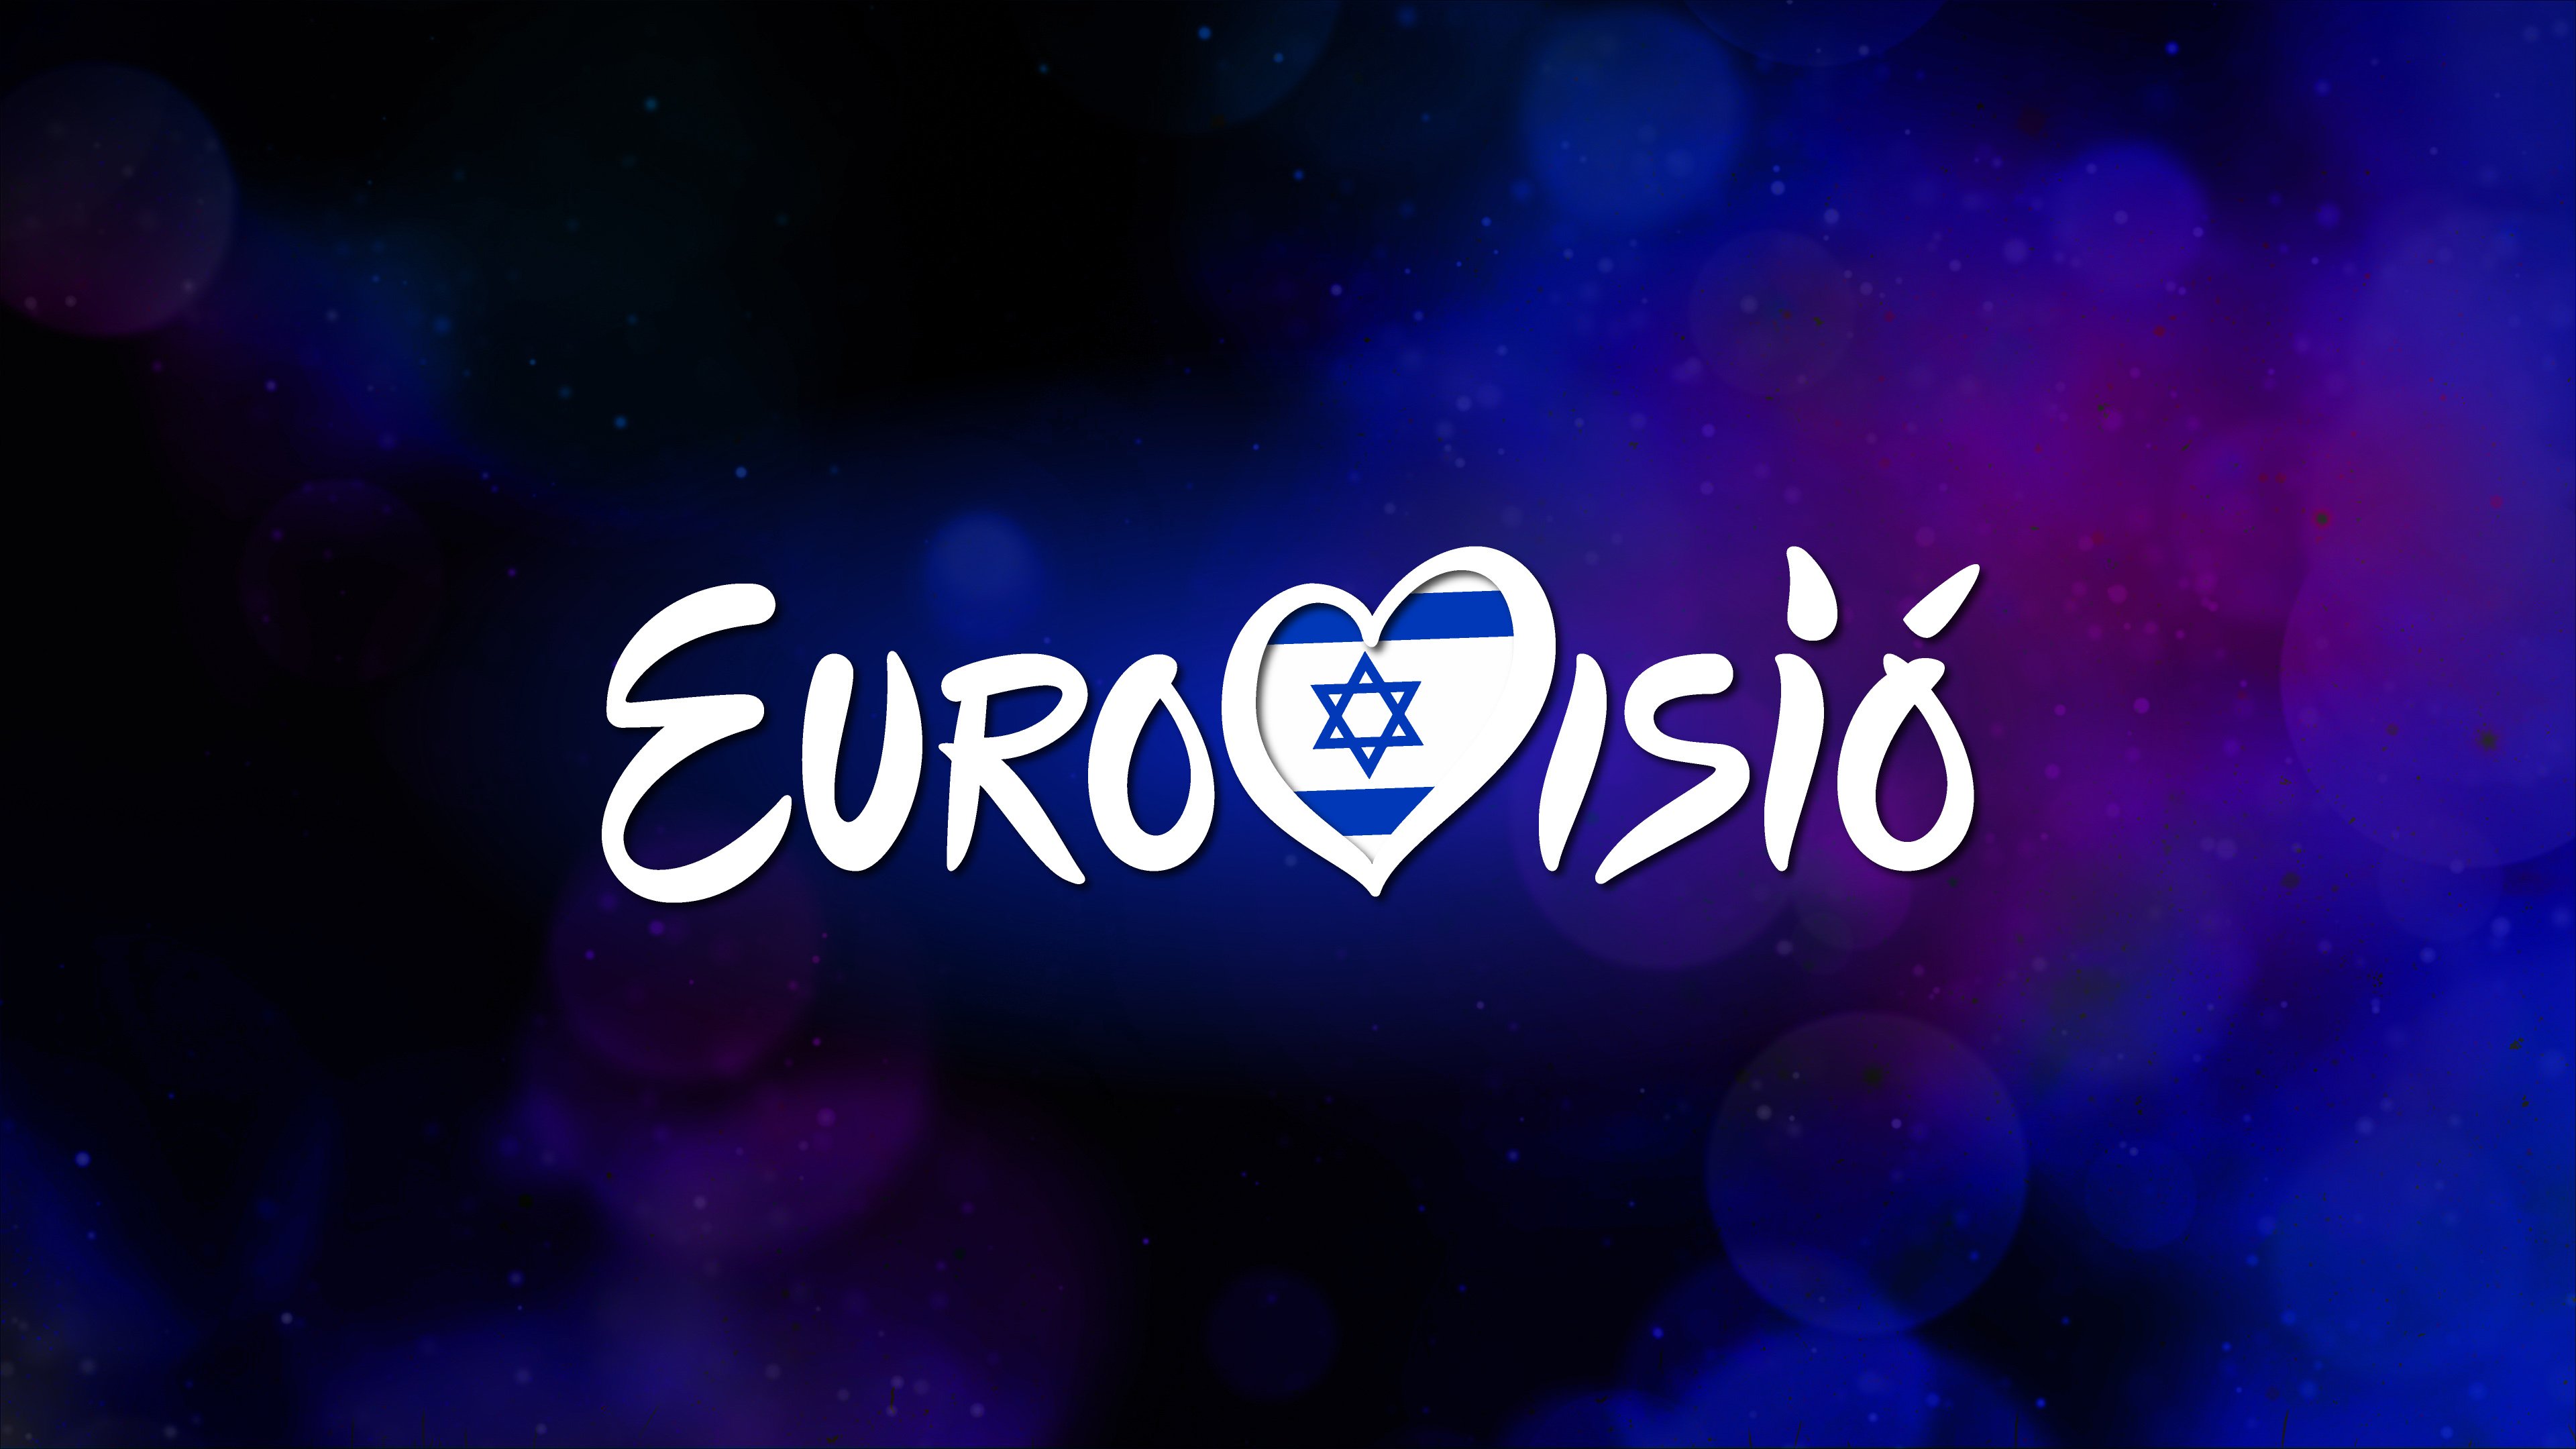 Les 10 curiositats que no et pots perdre d’Eurovisió 2019